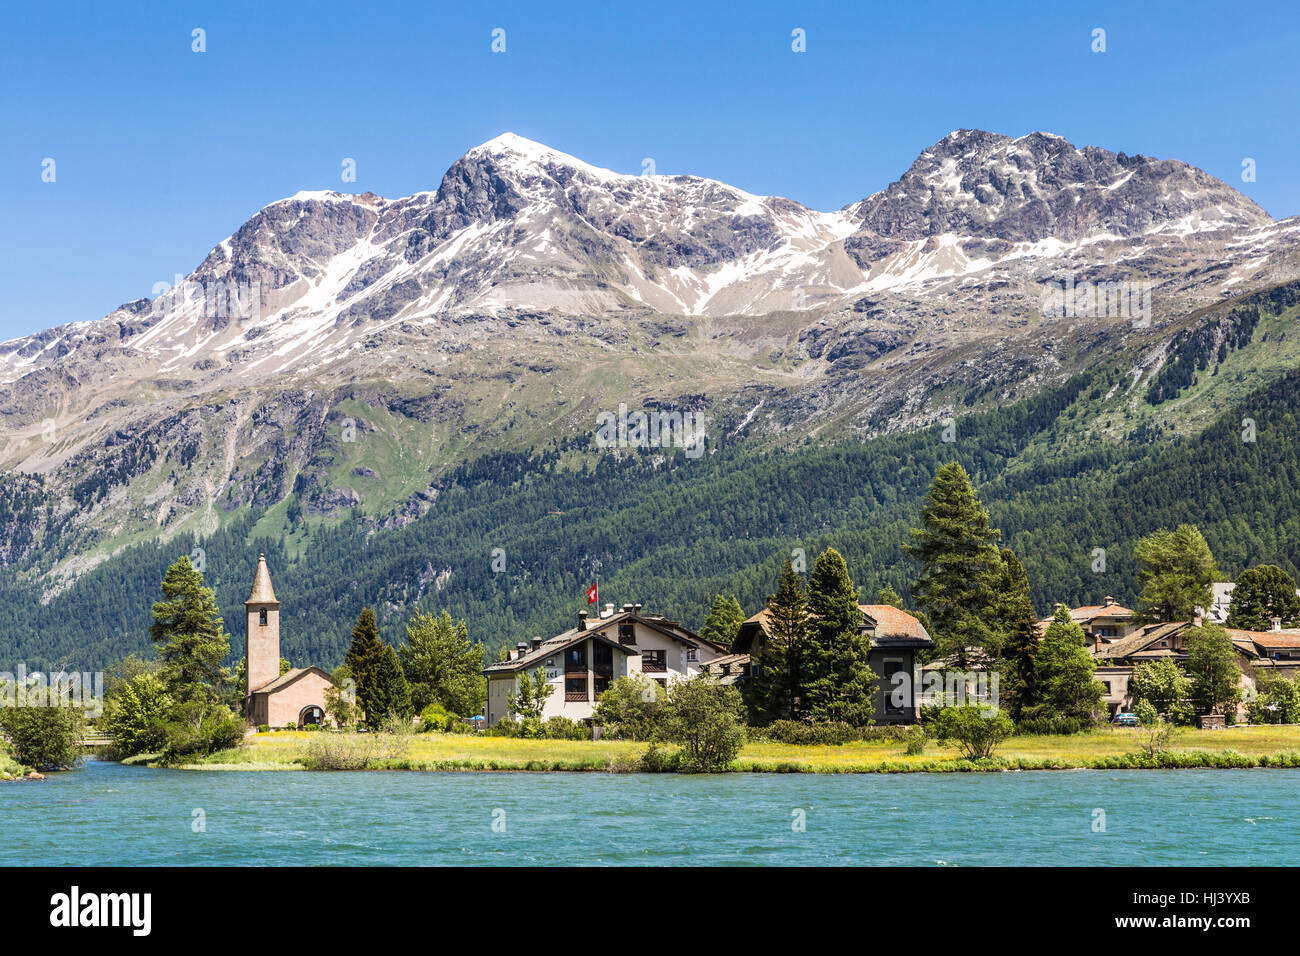 Tradizionale villaggio nei pressi di Silvaplana e le montagne famose località di Saint Moritz nel canton Grigioni nelle Alpi della Svizzera. Foto Stock